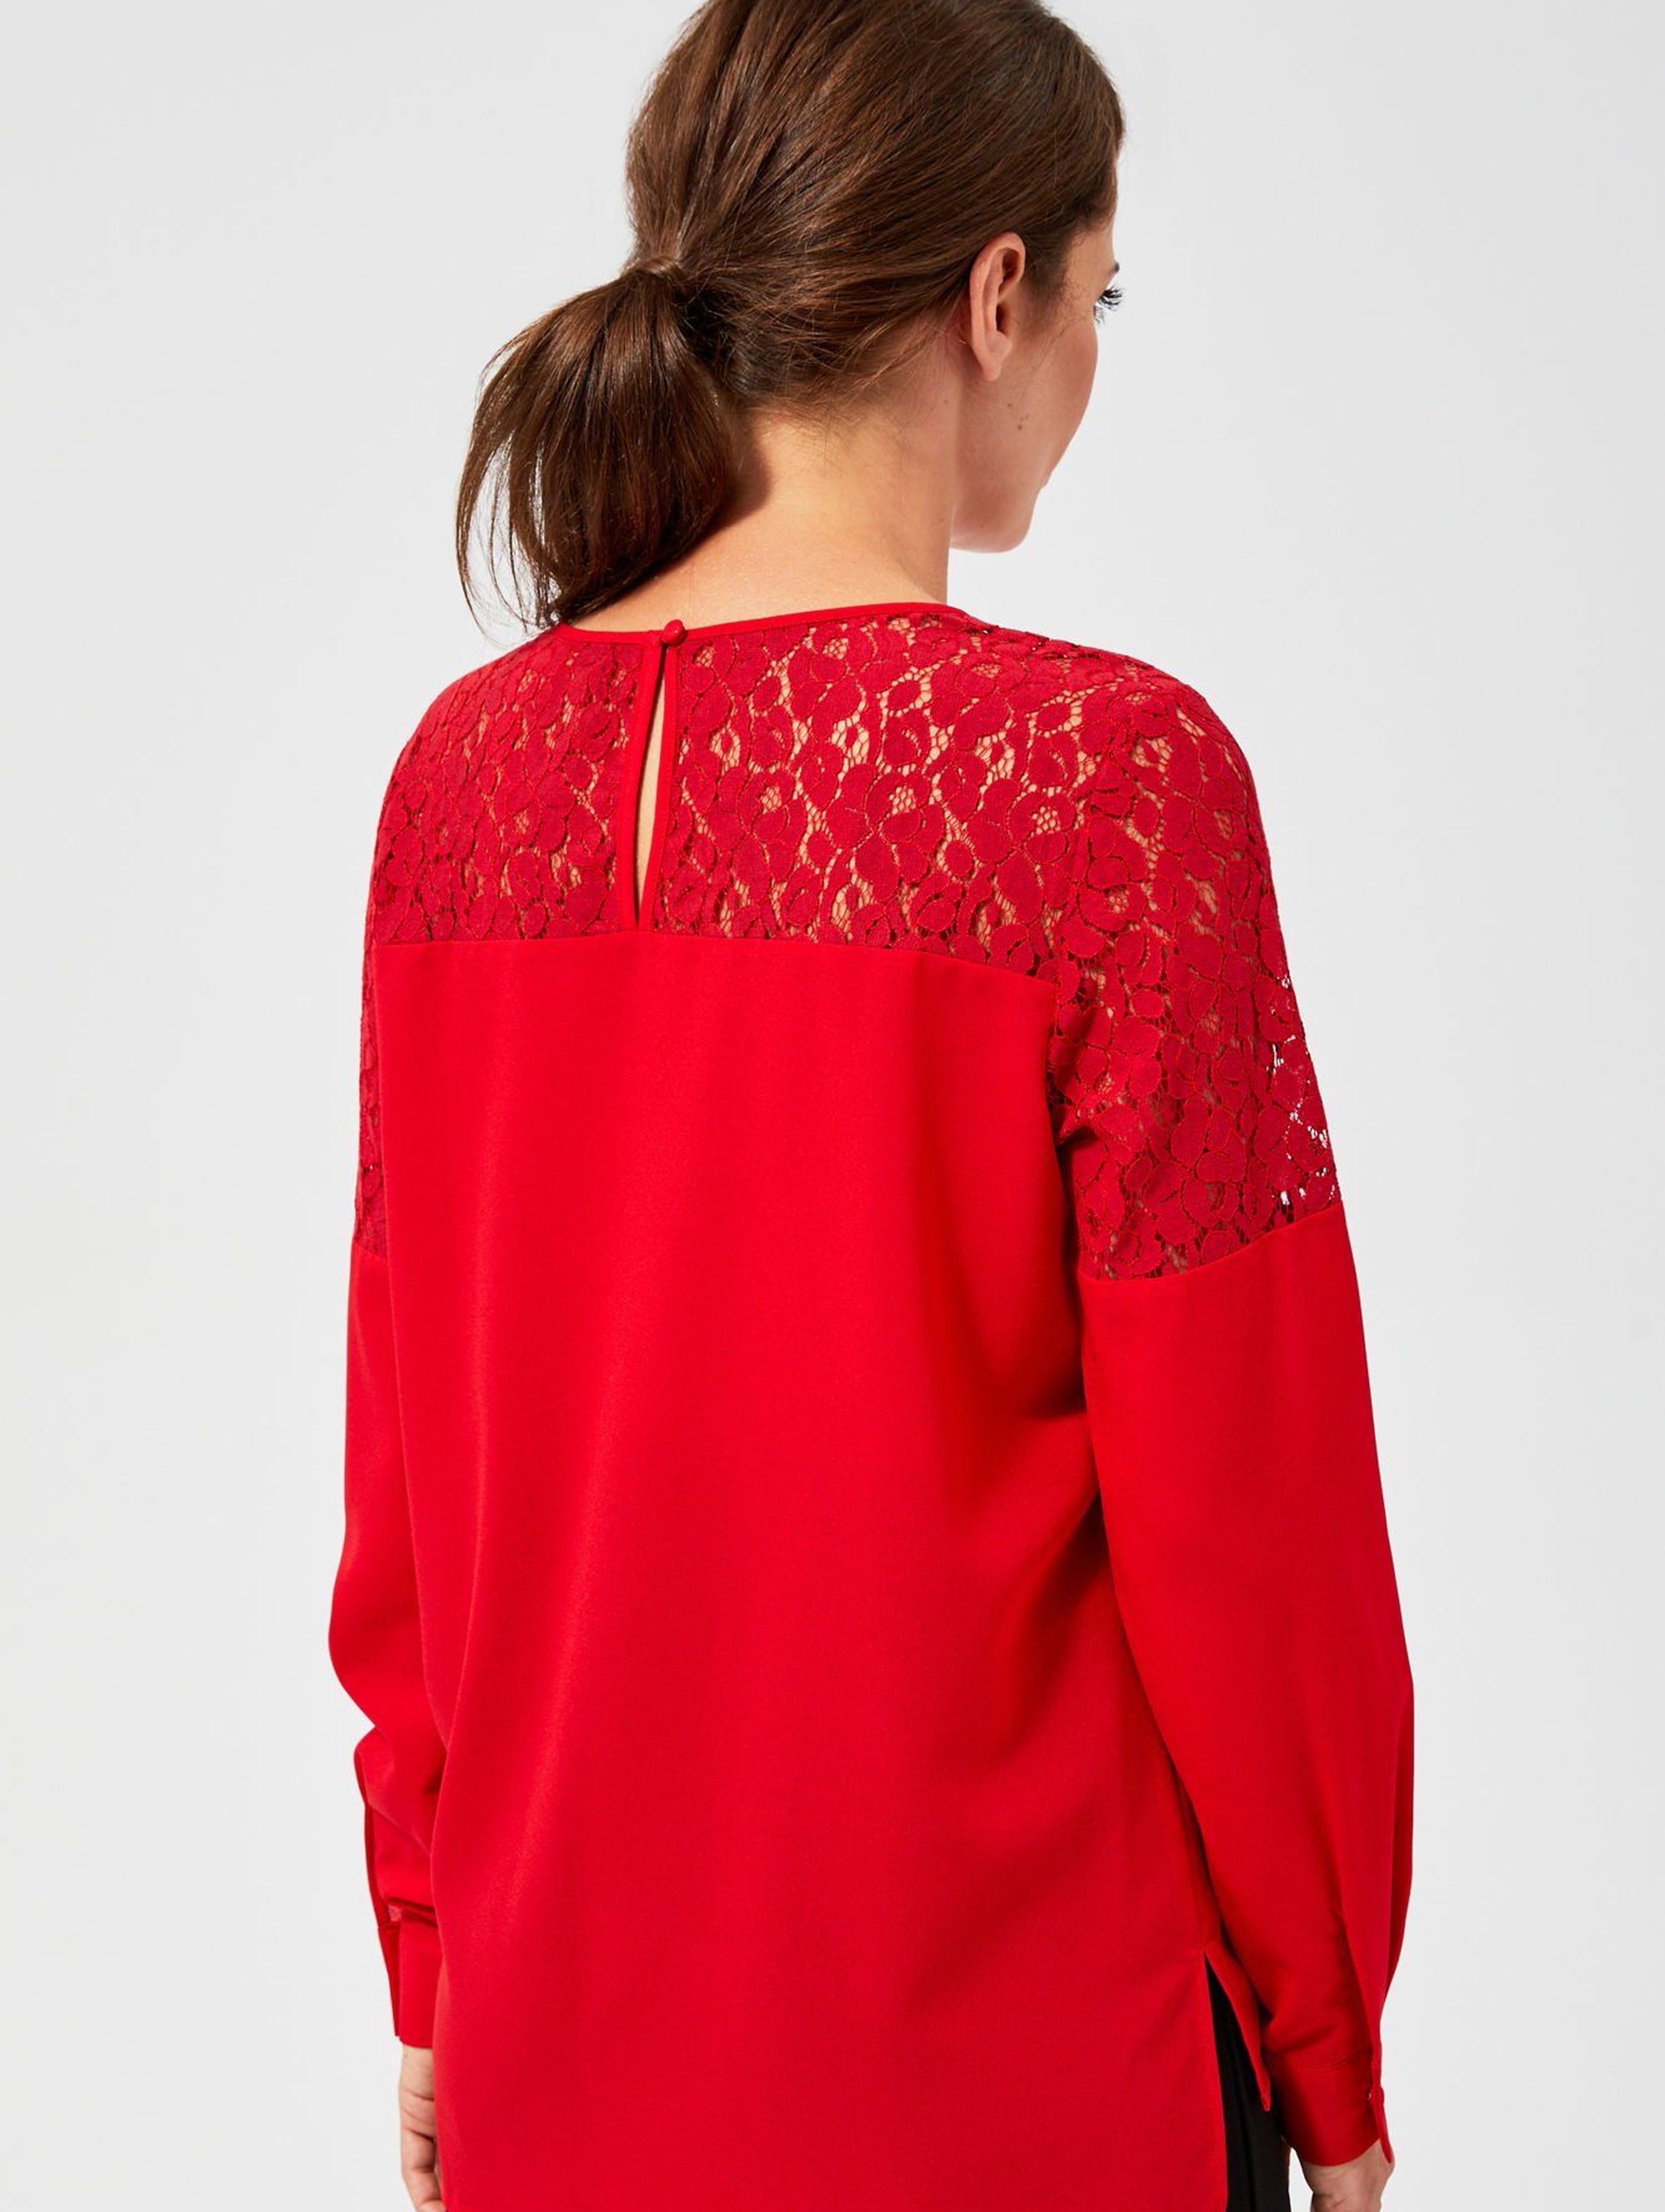 Czarwona bluzka damska z koronkową górą